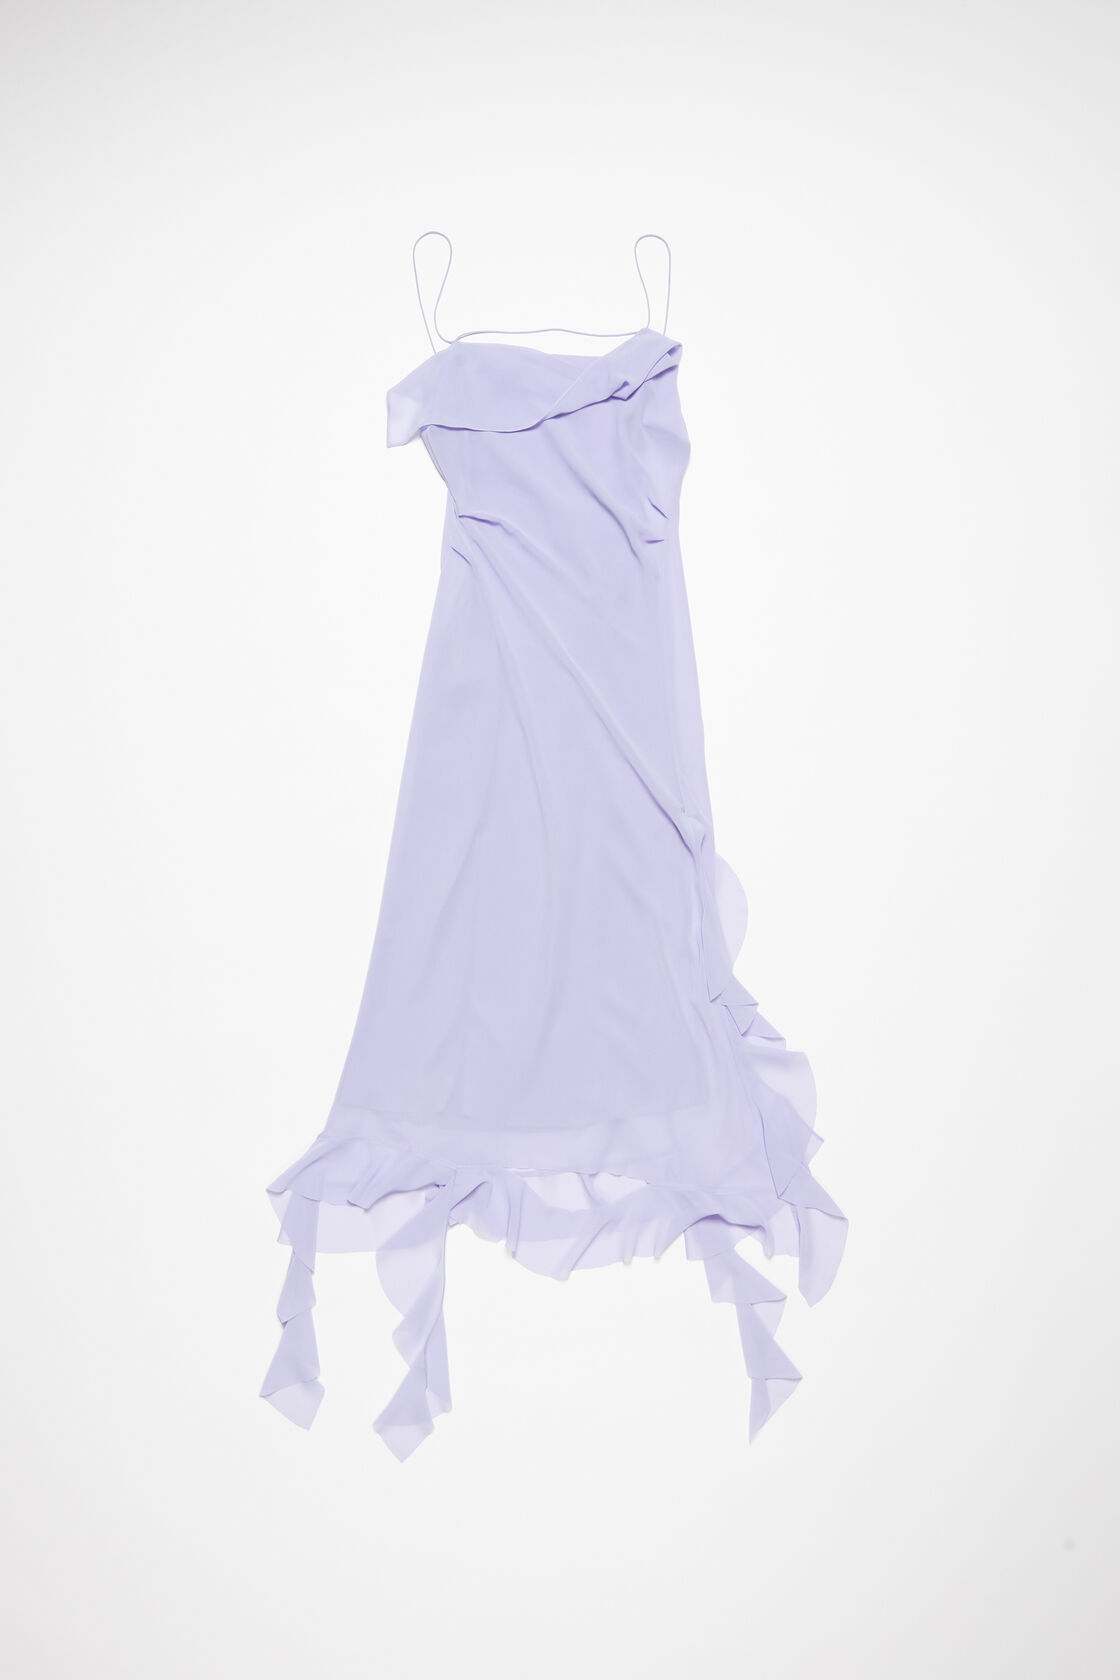 Acne Studios Ruffles Strap Dress In Purple